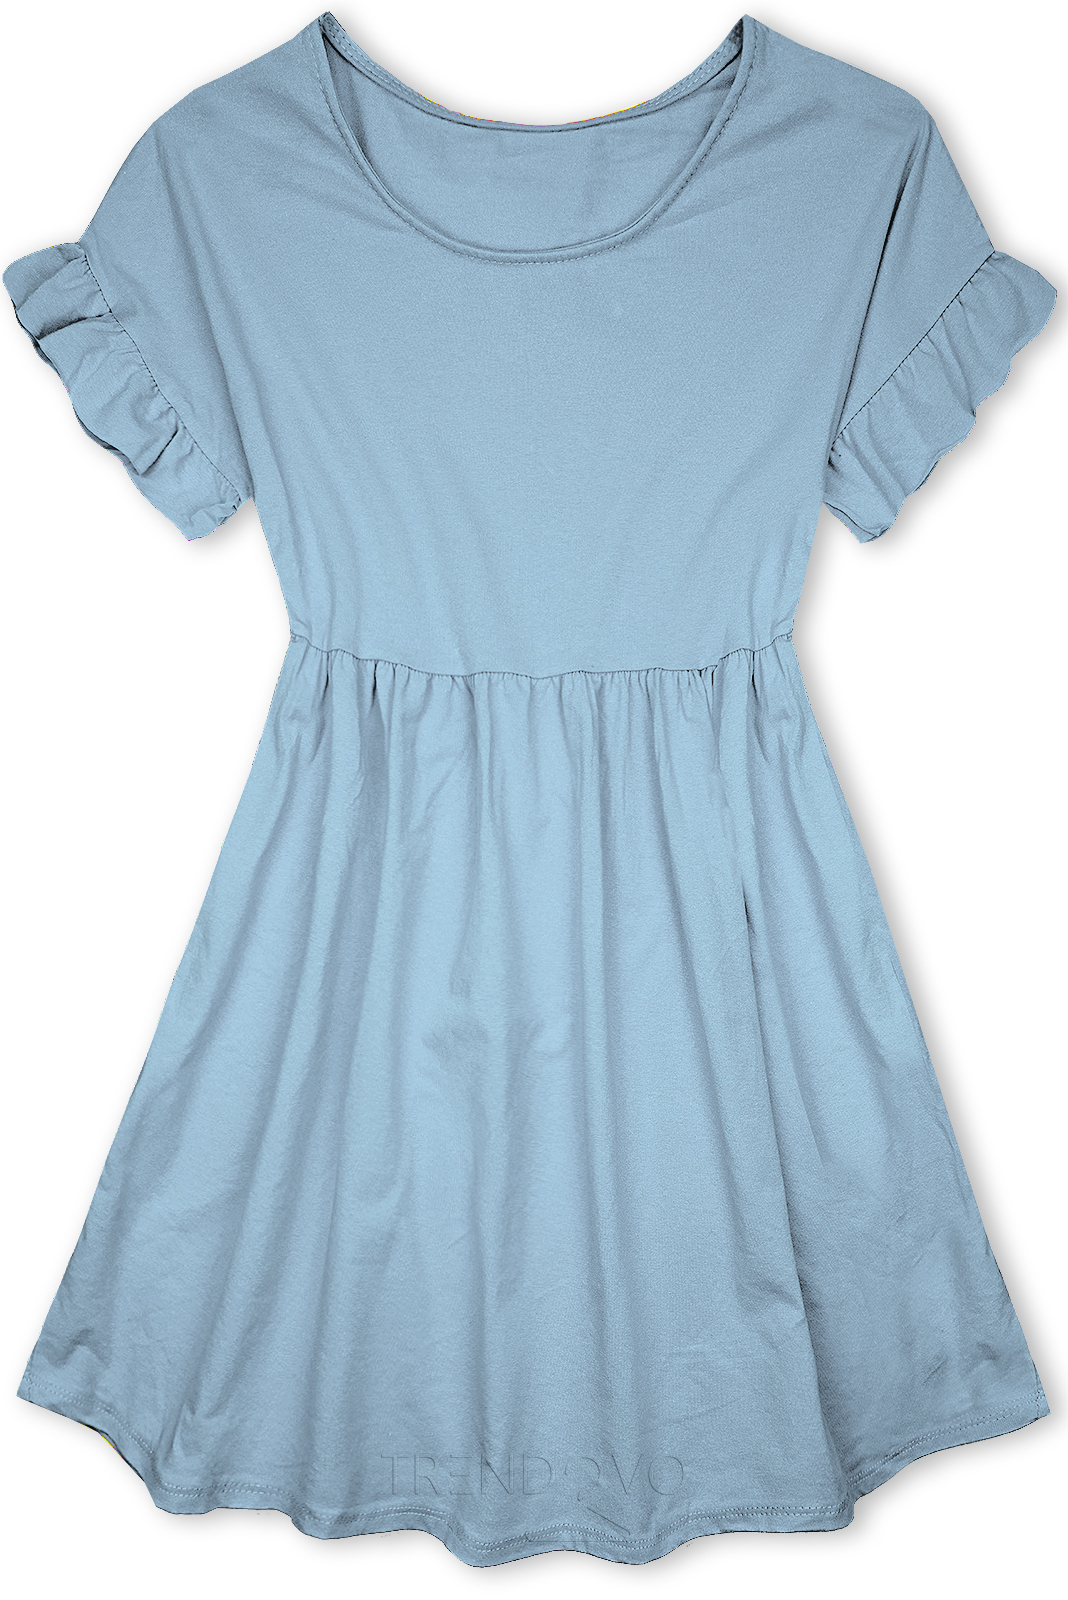 Světle modré bavlněné šaty v A-střihu